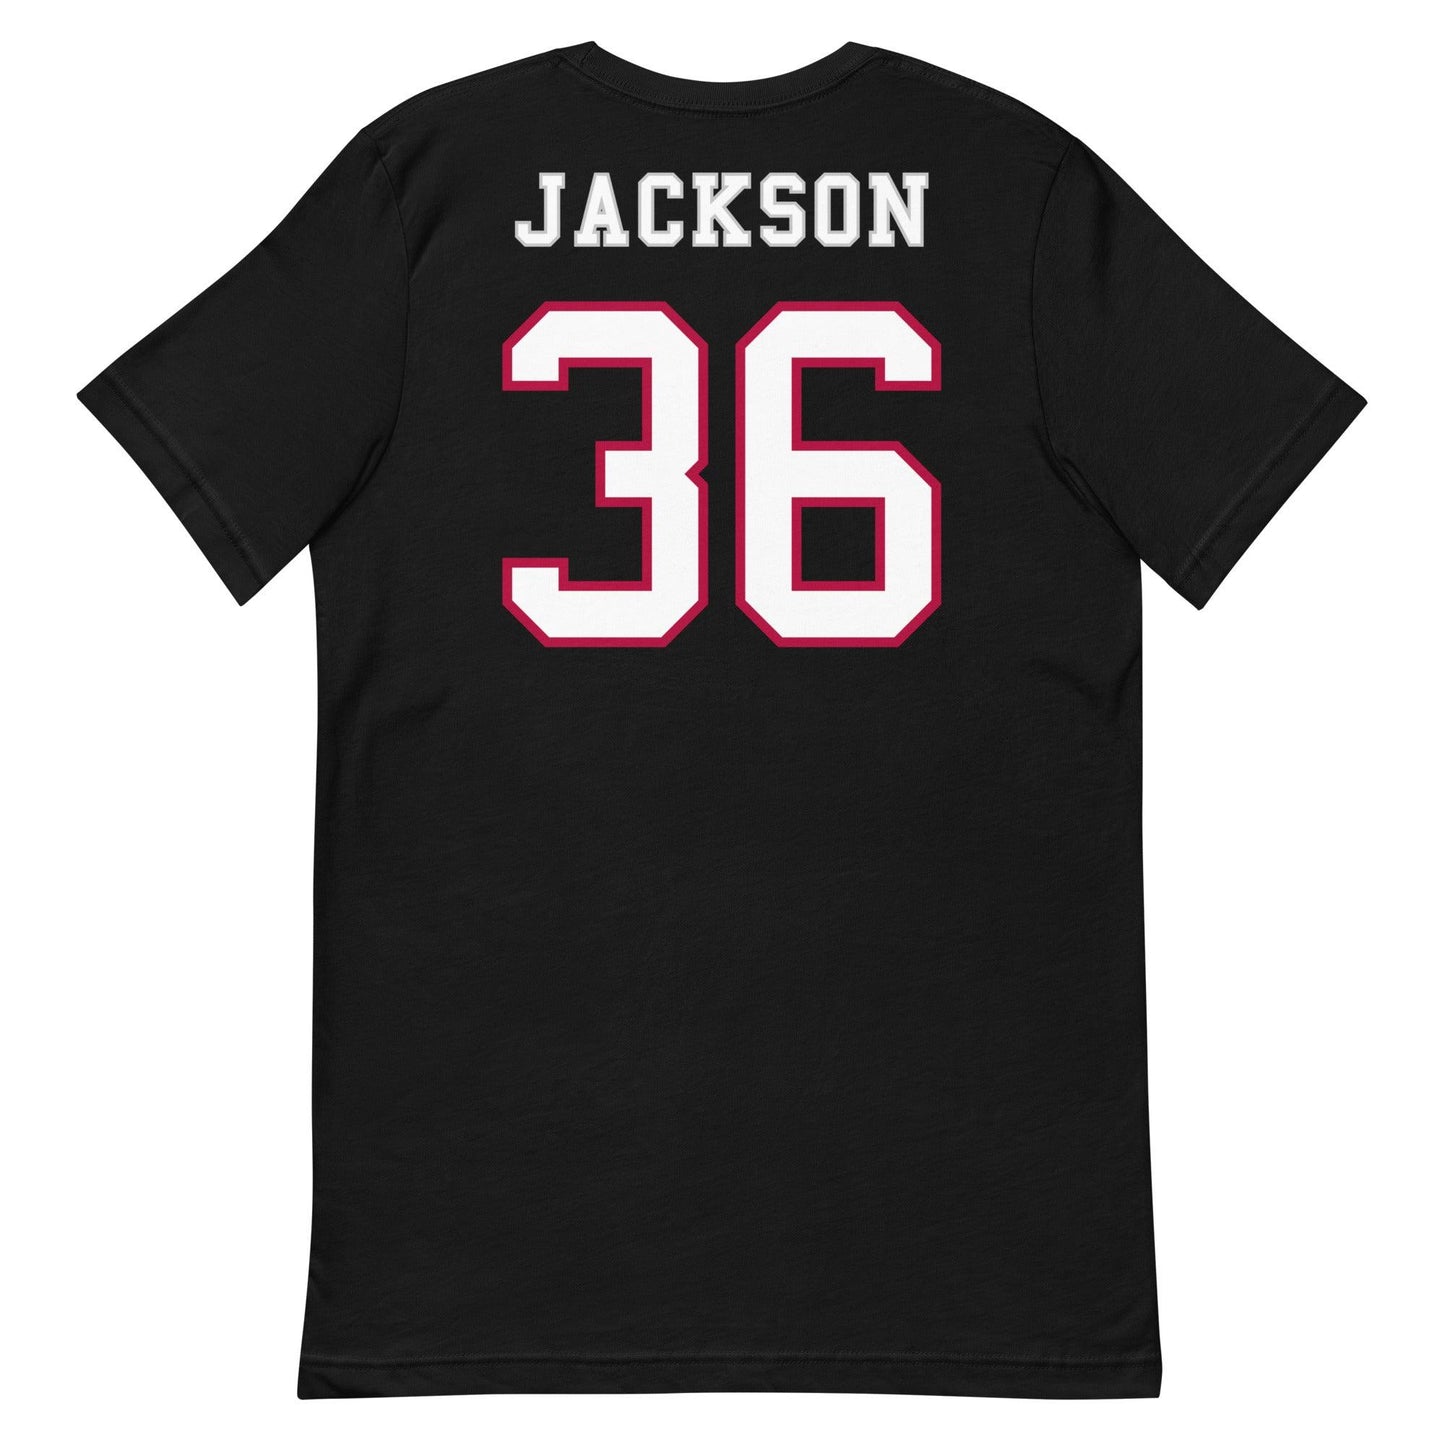 Ian Jackson "Jersey" t-shirt - Fan Arch